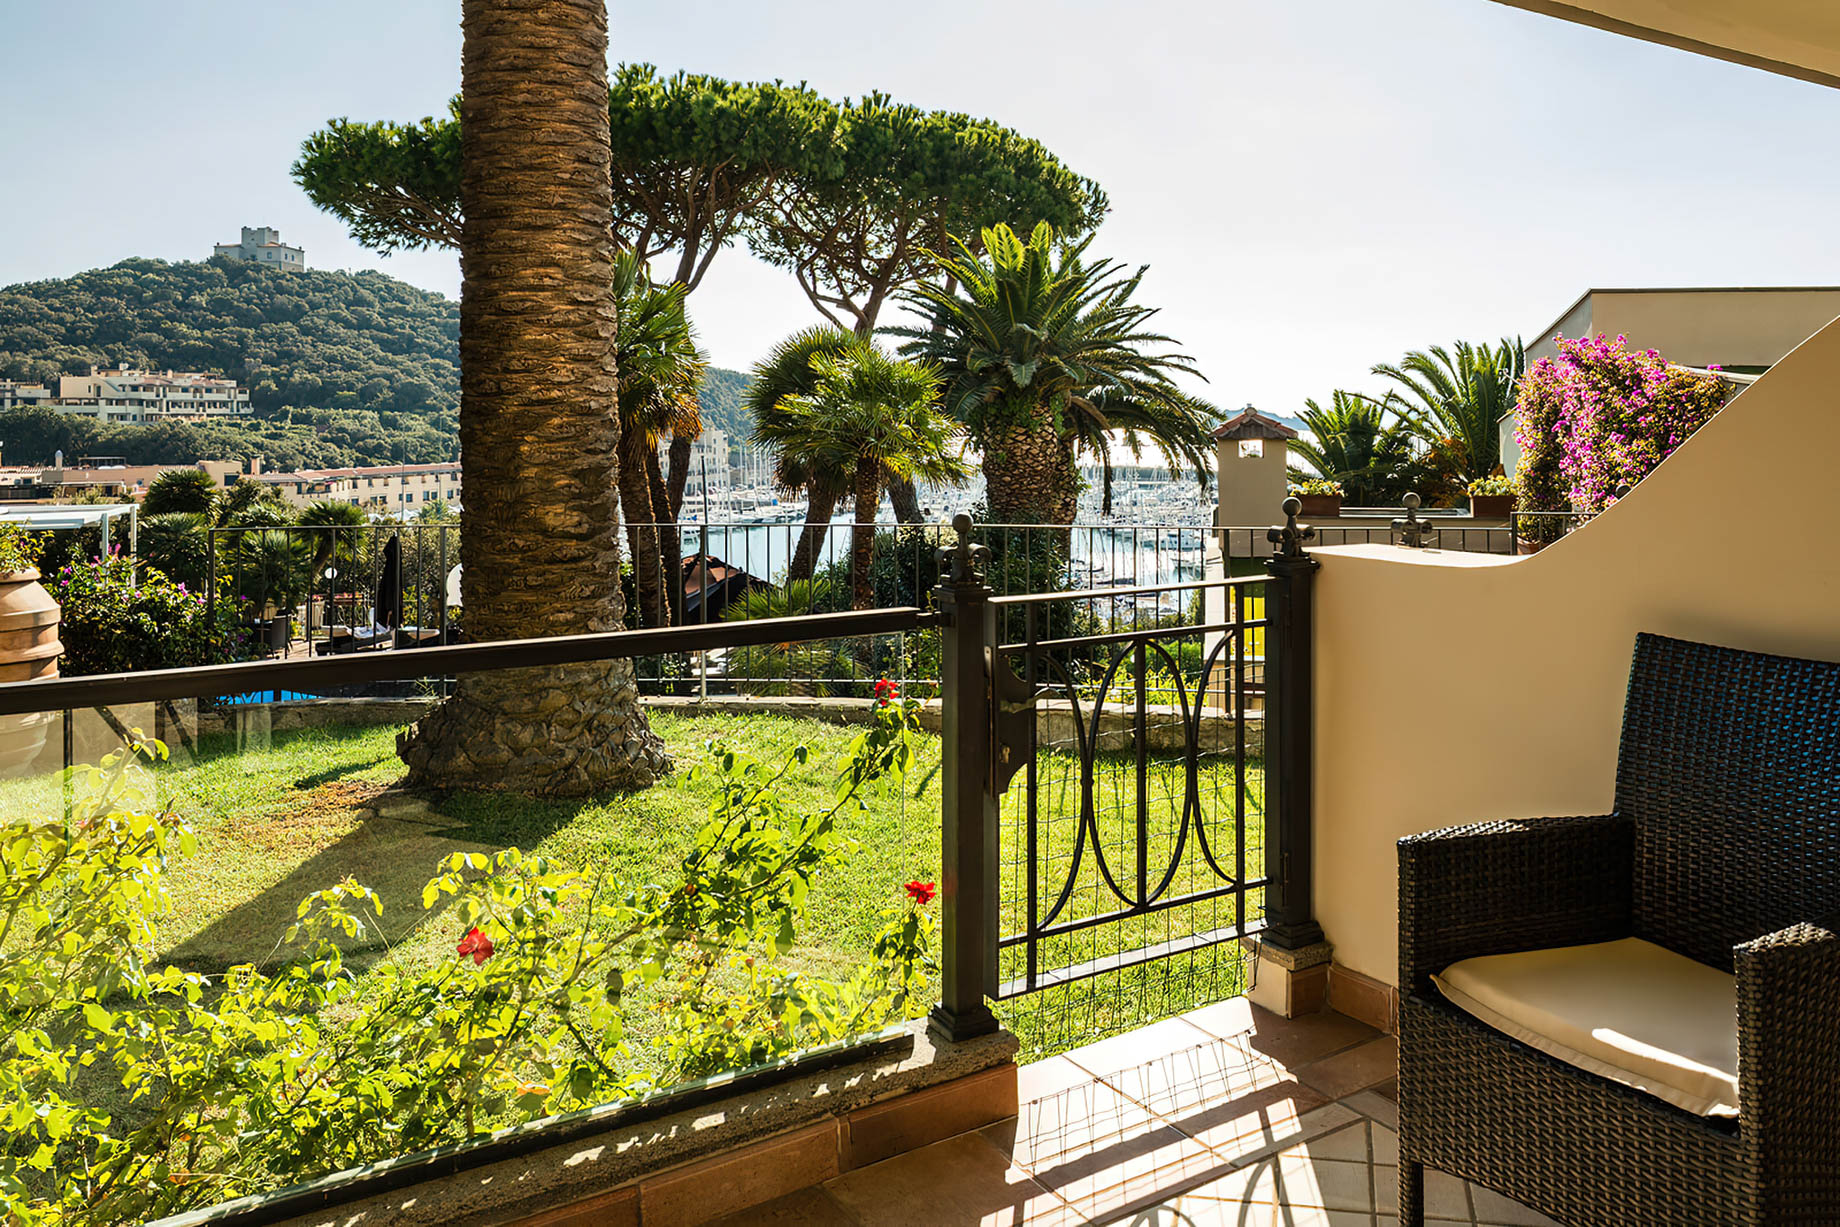 Baglioni Resort Cala del Porto Tuscany - Punta Ala, Italy - Deluxe Sea View Room Terrace